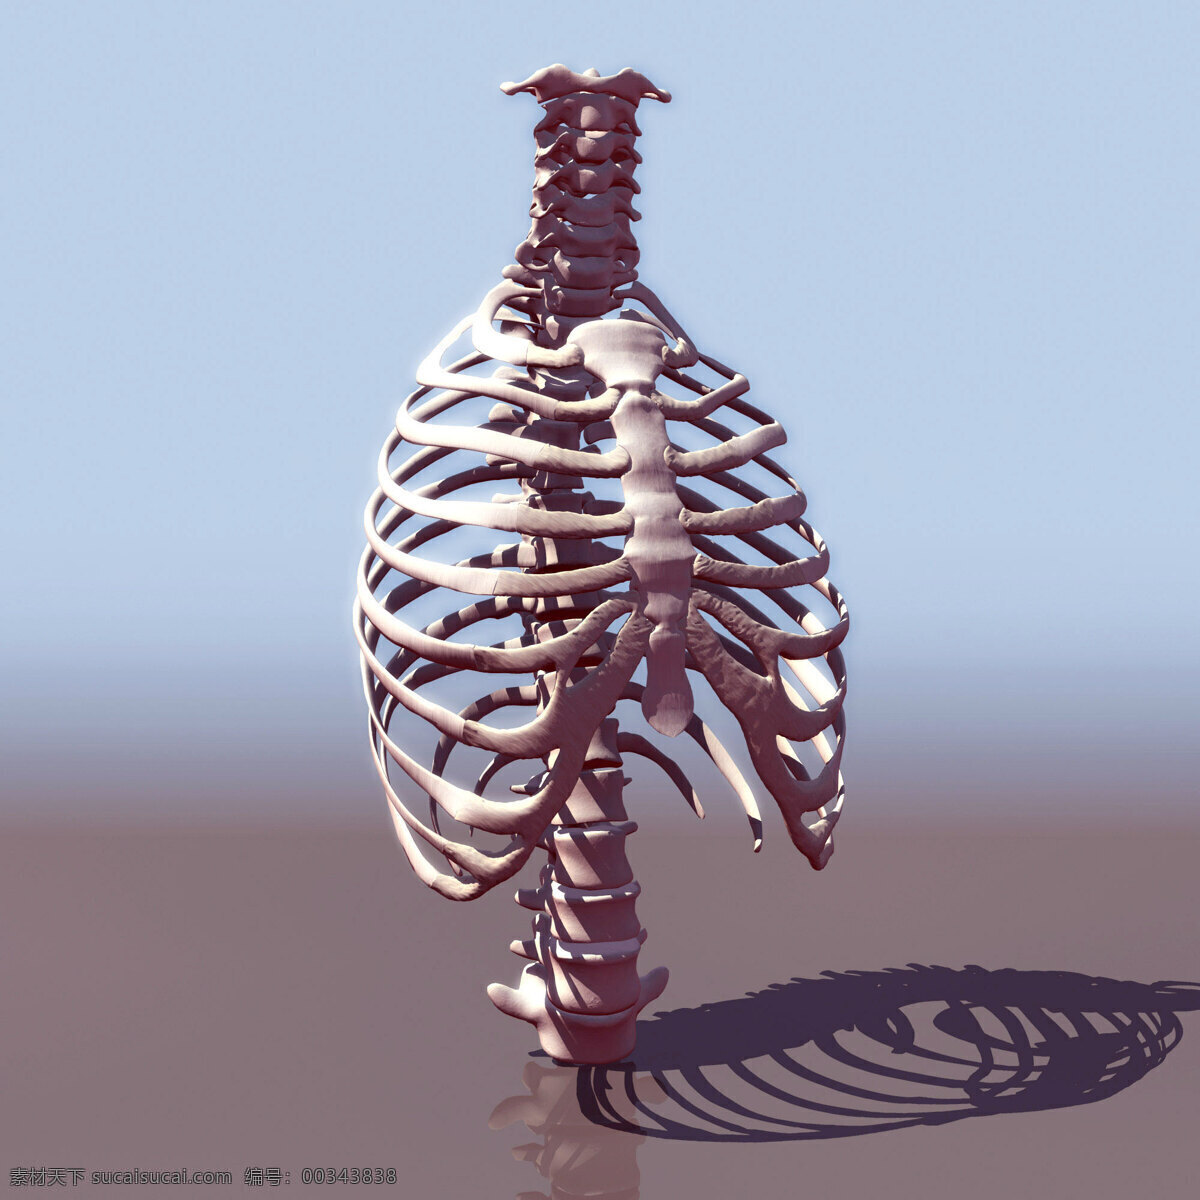 人体 骨骼 模型 效果图 人体骨骼 3dmax 医学研究 医学人体 透视人体 人体结构 关节 医学 3d设计 其他模型